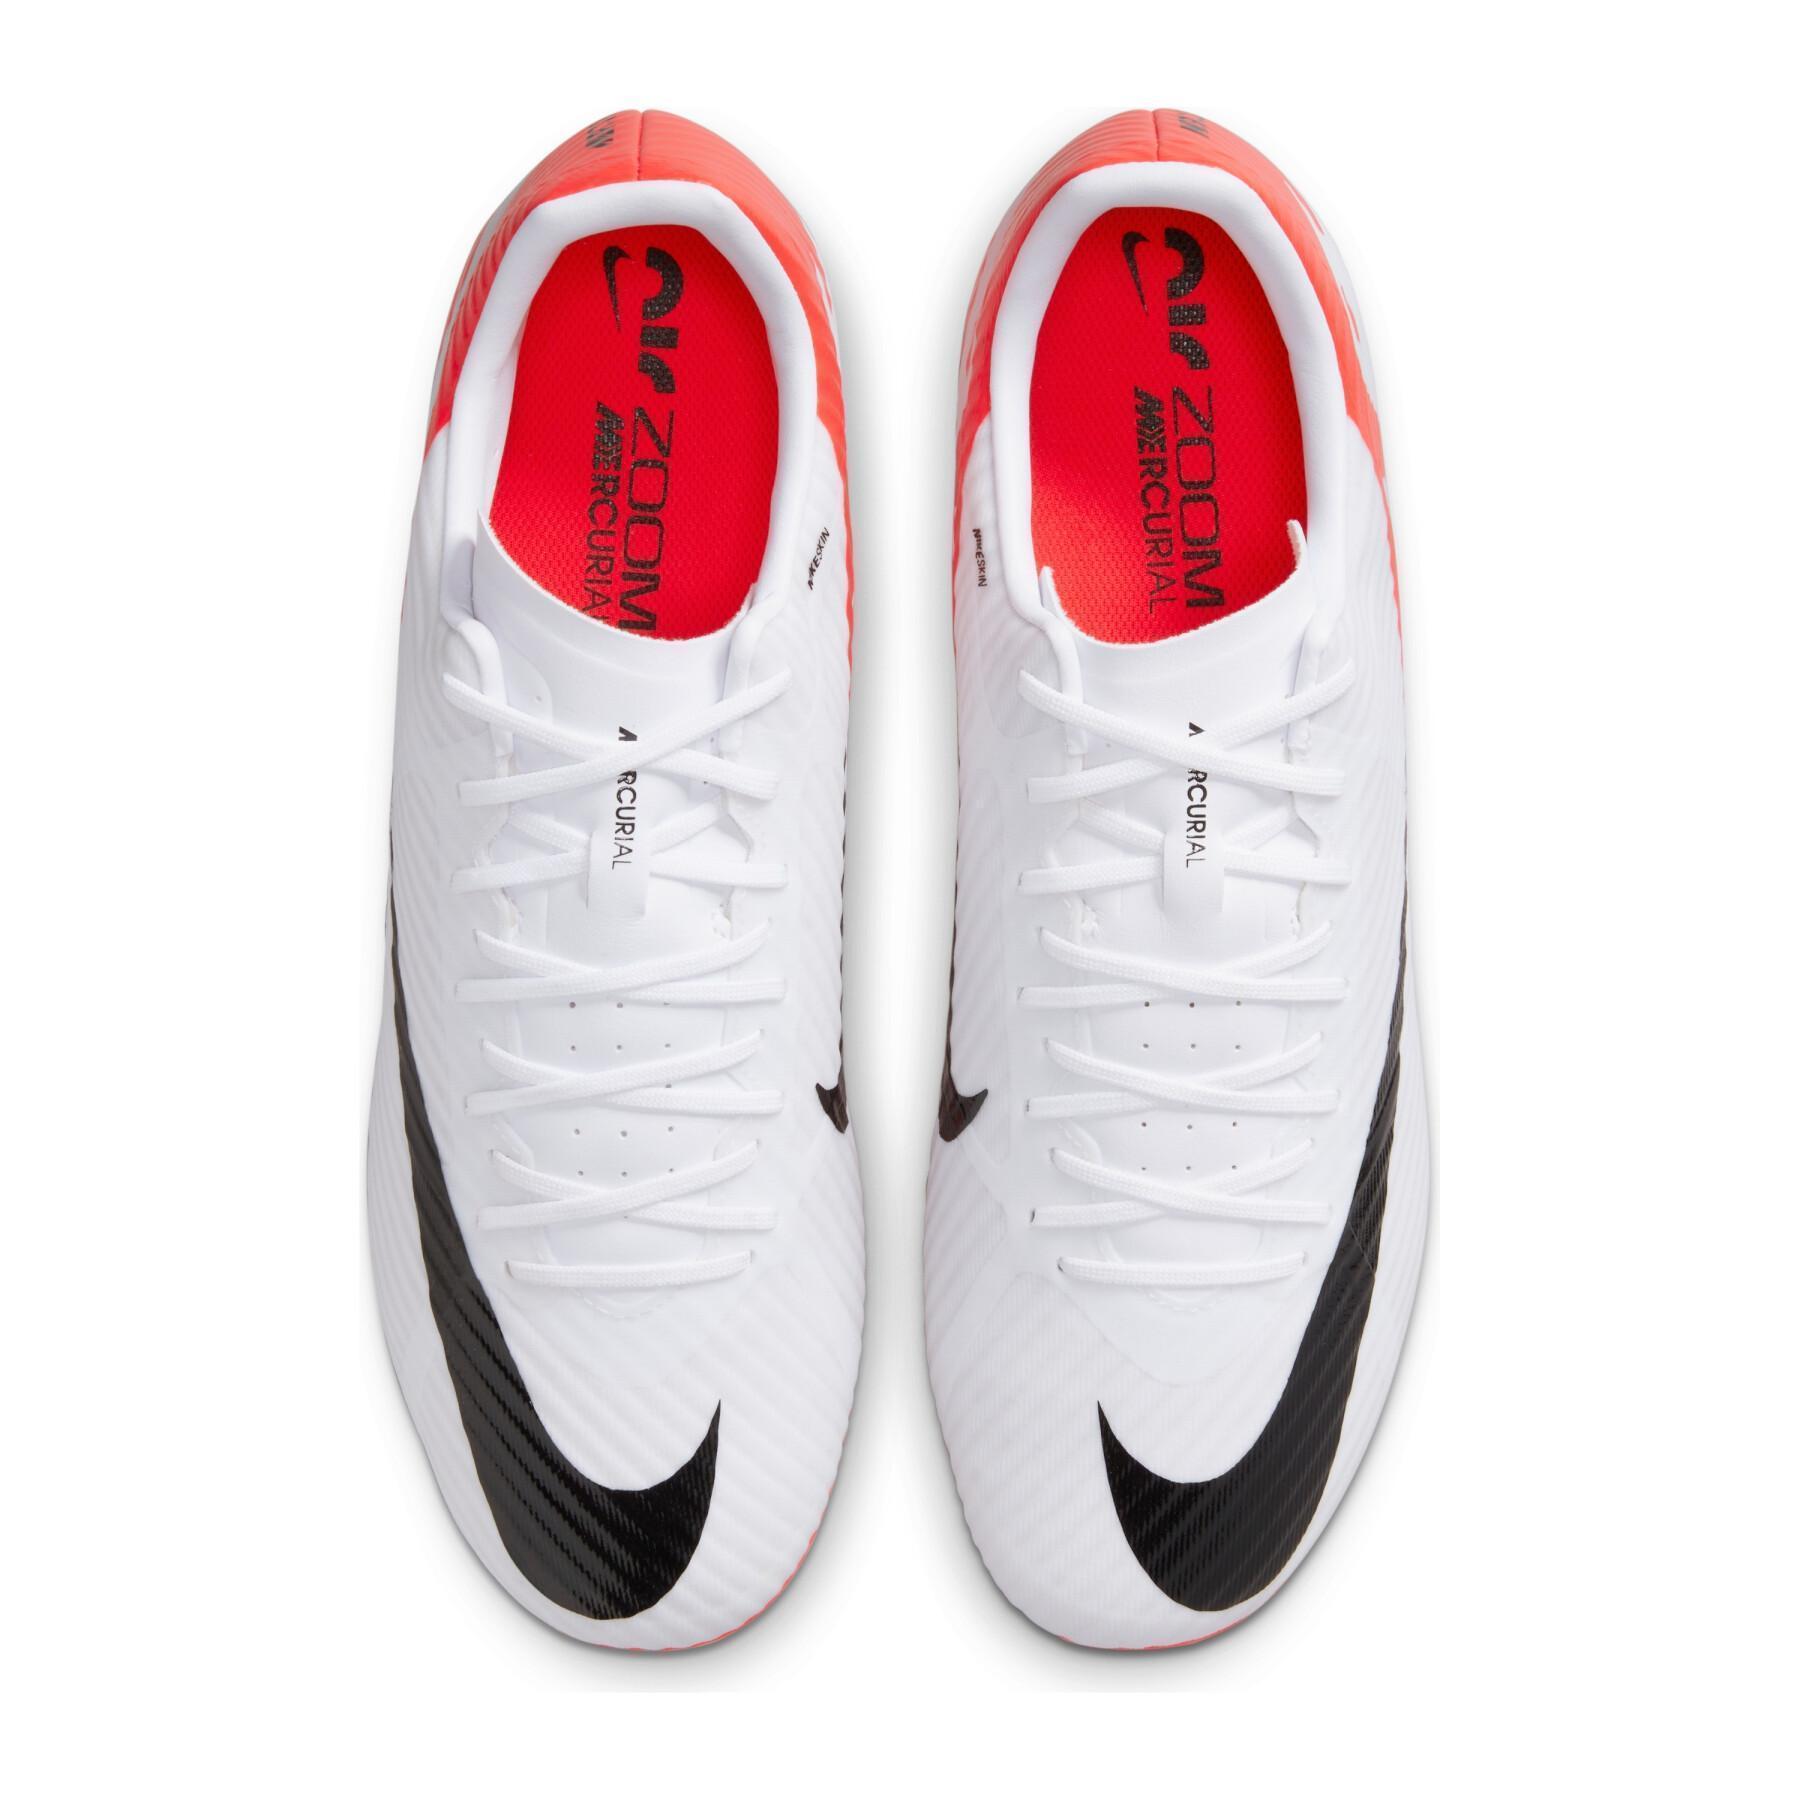 Chaussures de football Nike Mercurial Vapor 15 Academy MG - Ready Pack